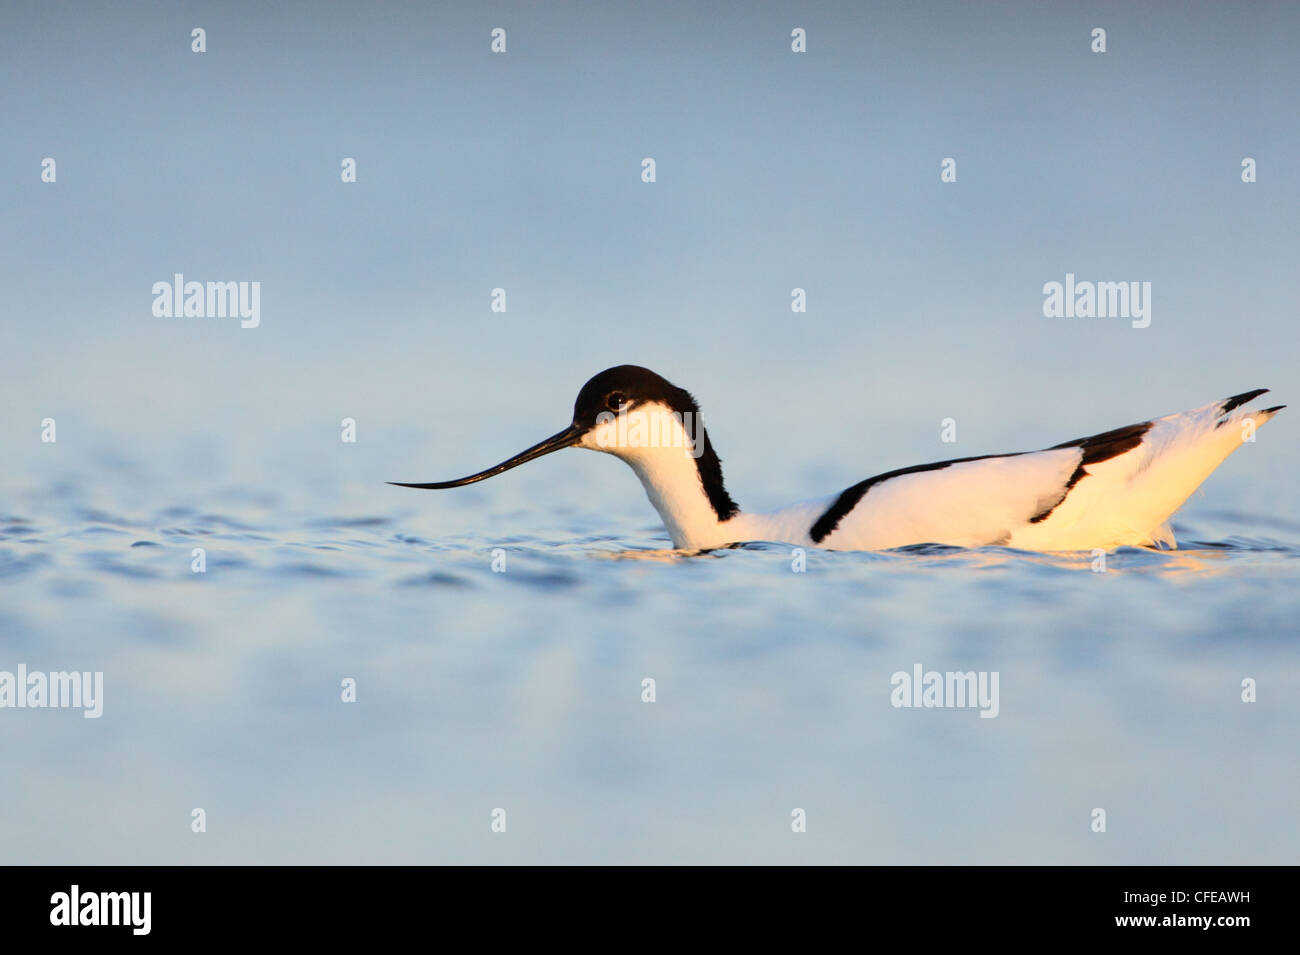 Avocet (Recurvirostra avosetta) swimming in the water. Europe Stock Photo